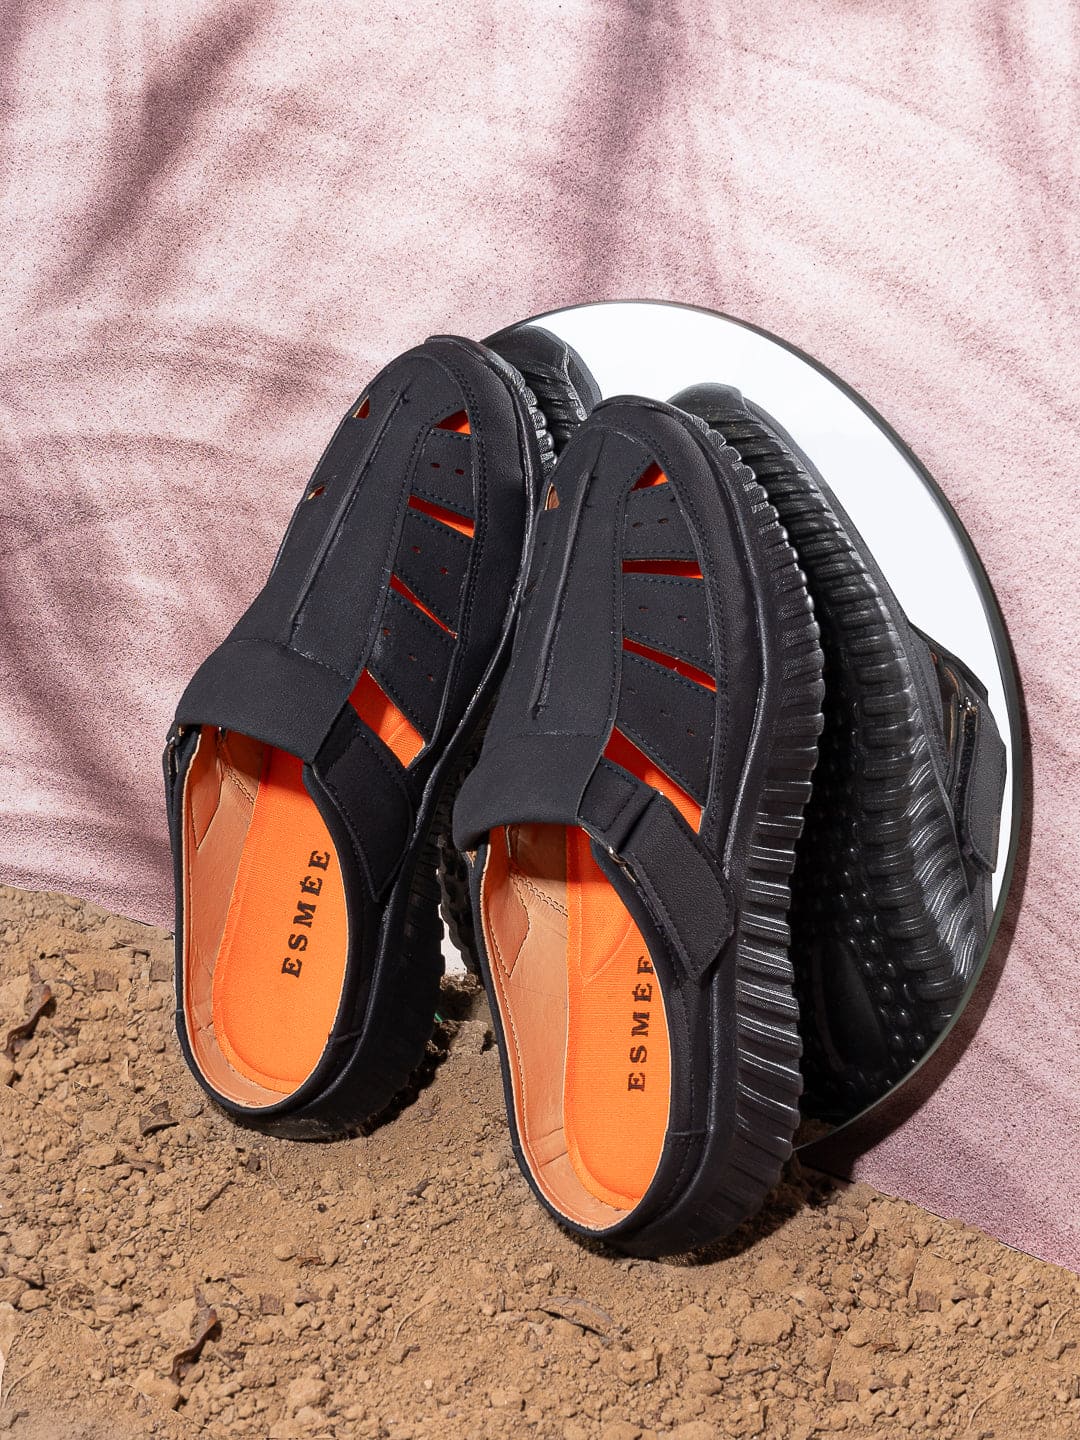 Esmee WalkZee Sandals for Men - Black